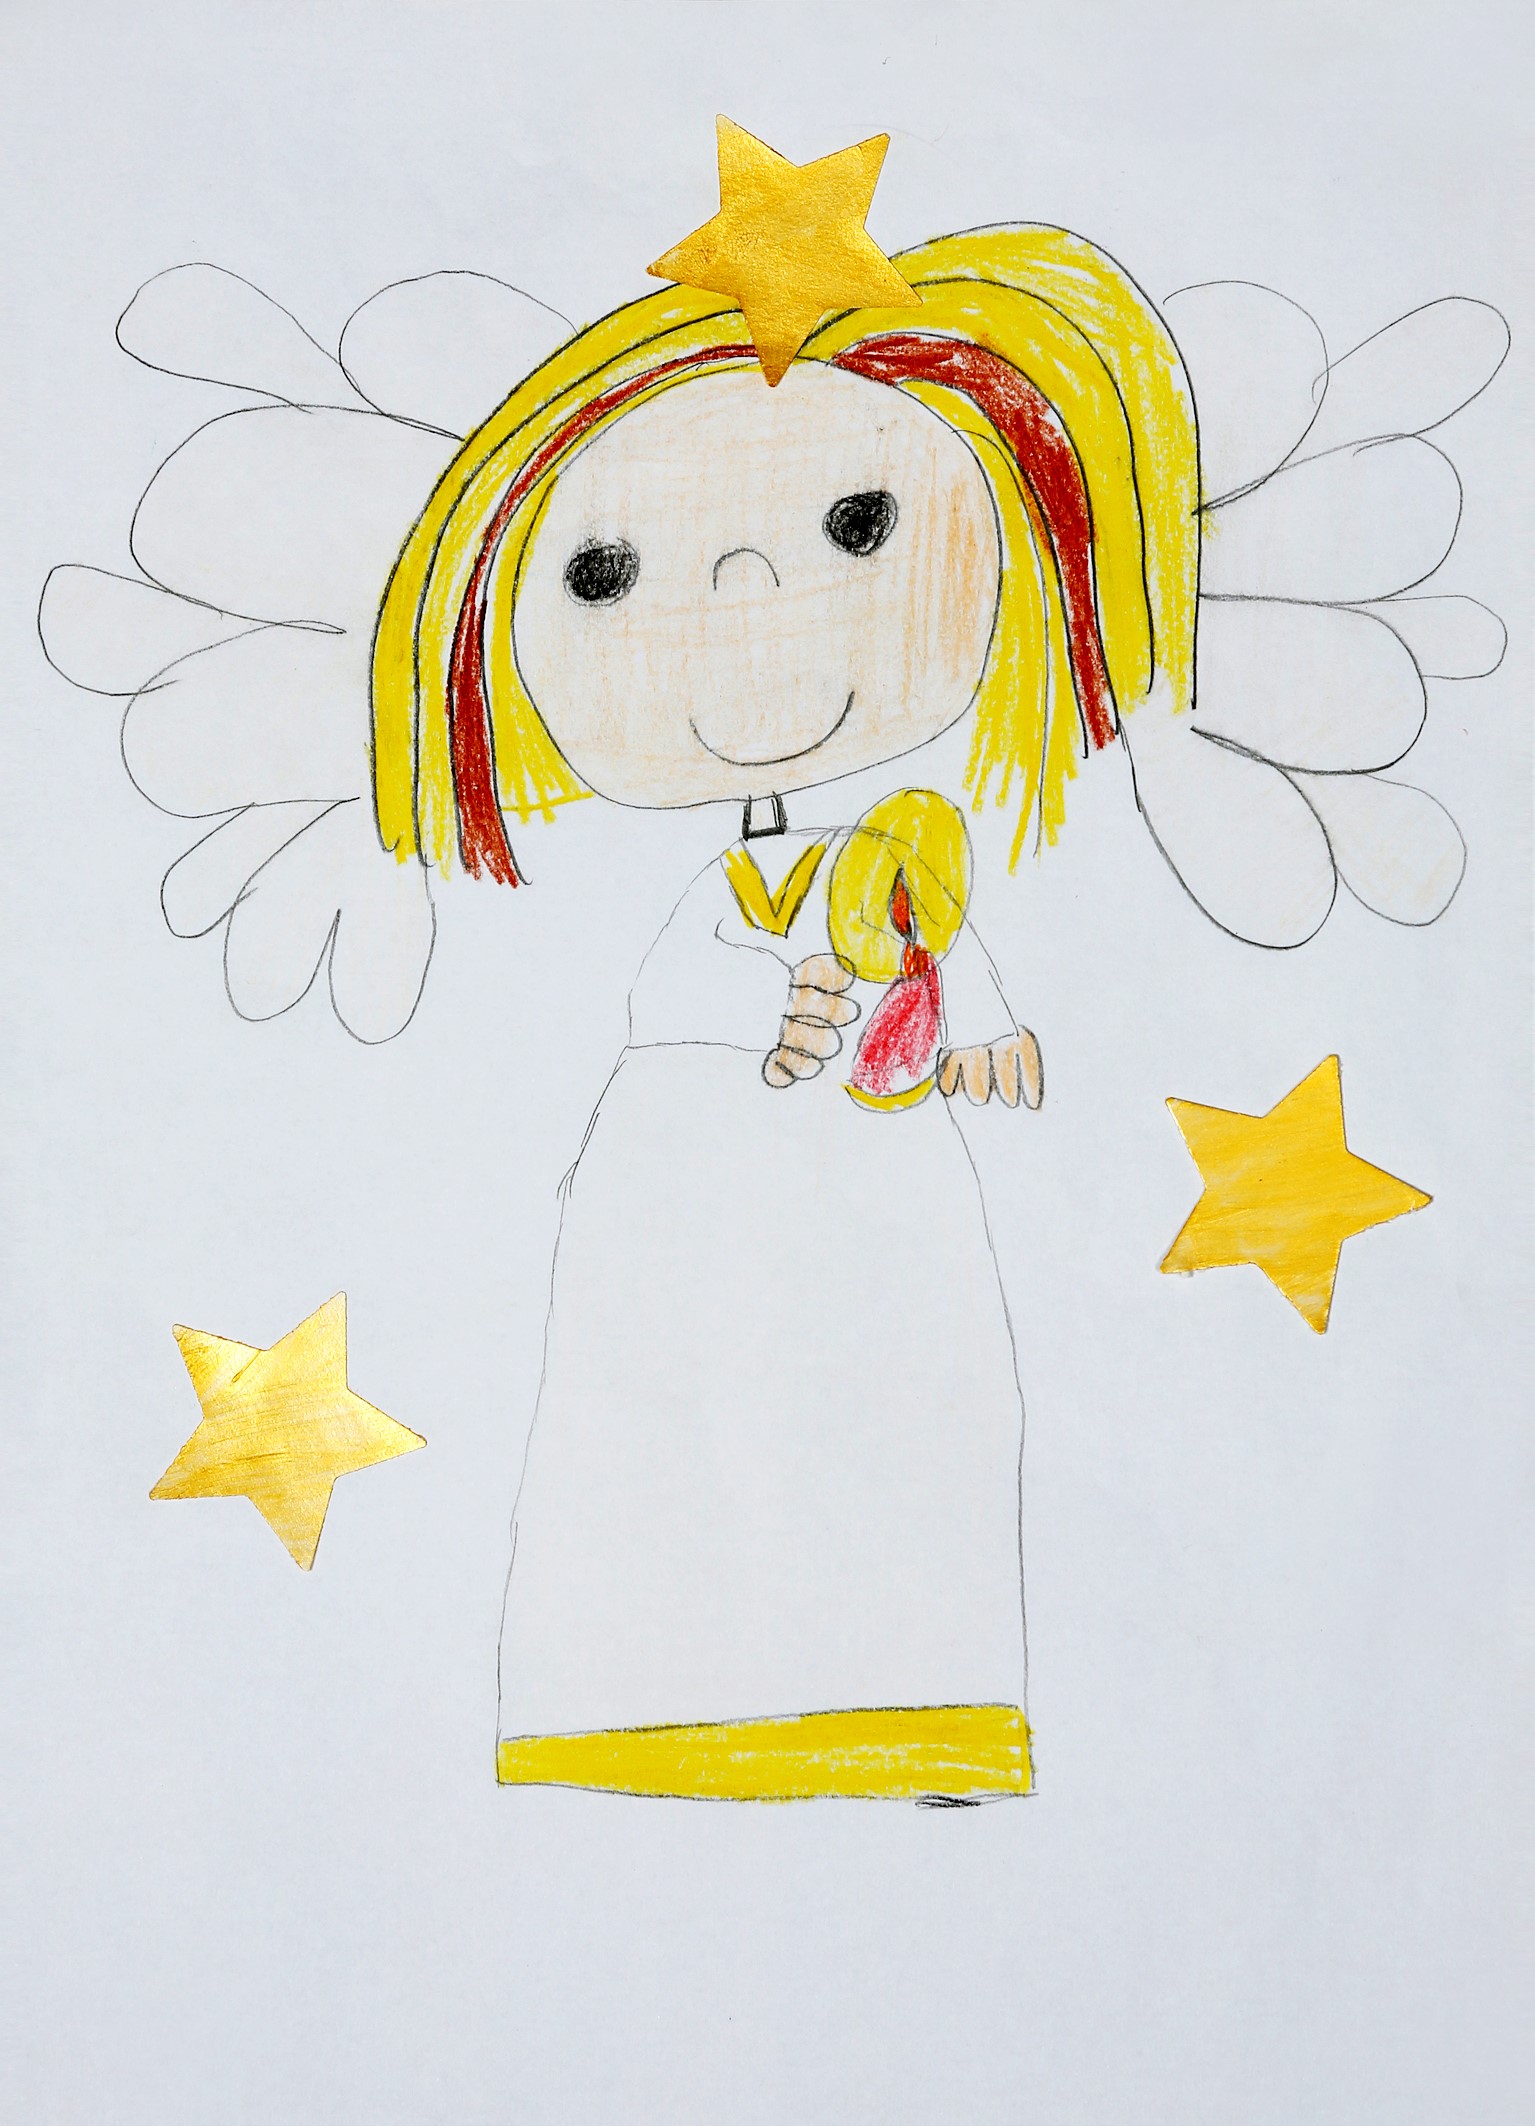 Zeichung: Engel trägt eine brennende Kerze - drumherum leuchte drei Sterne